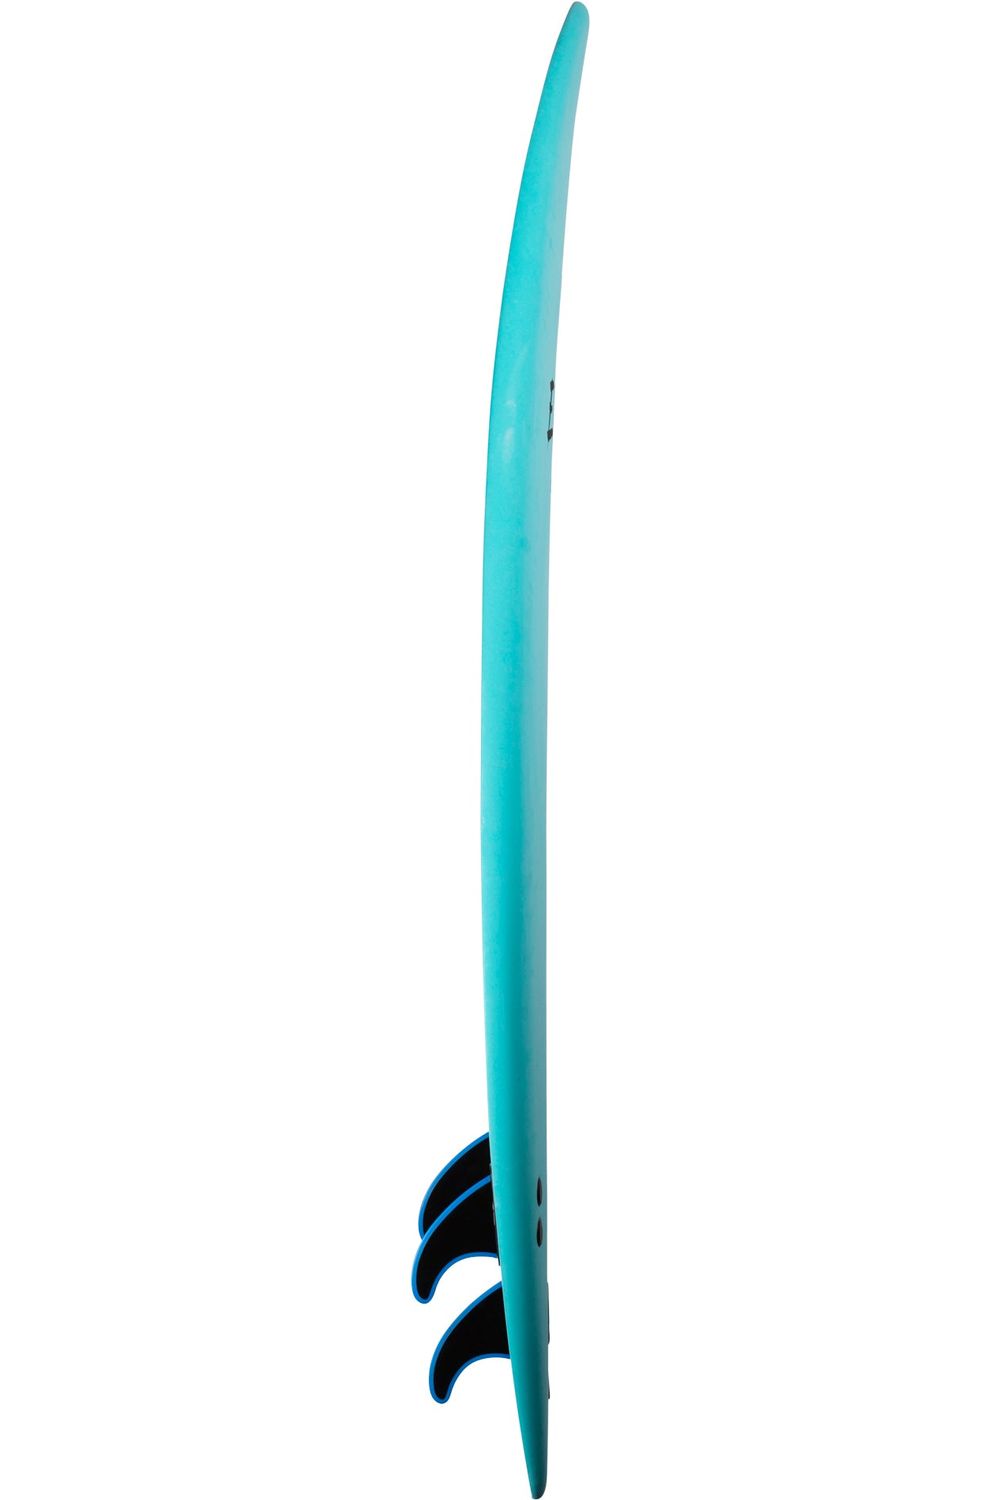 Tiki Epic 6'6 Softboard In Blue